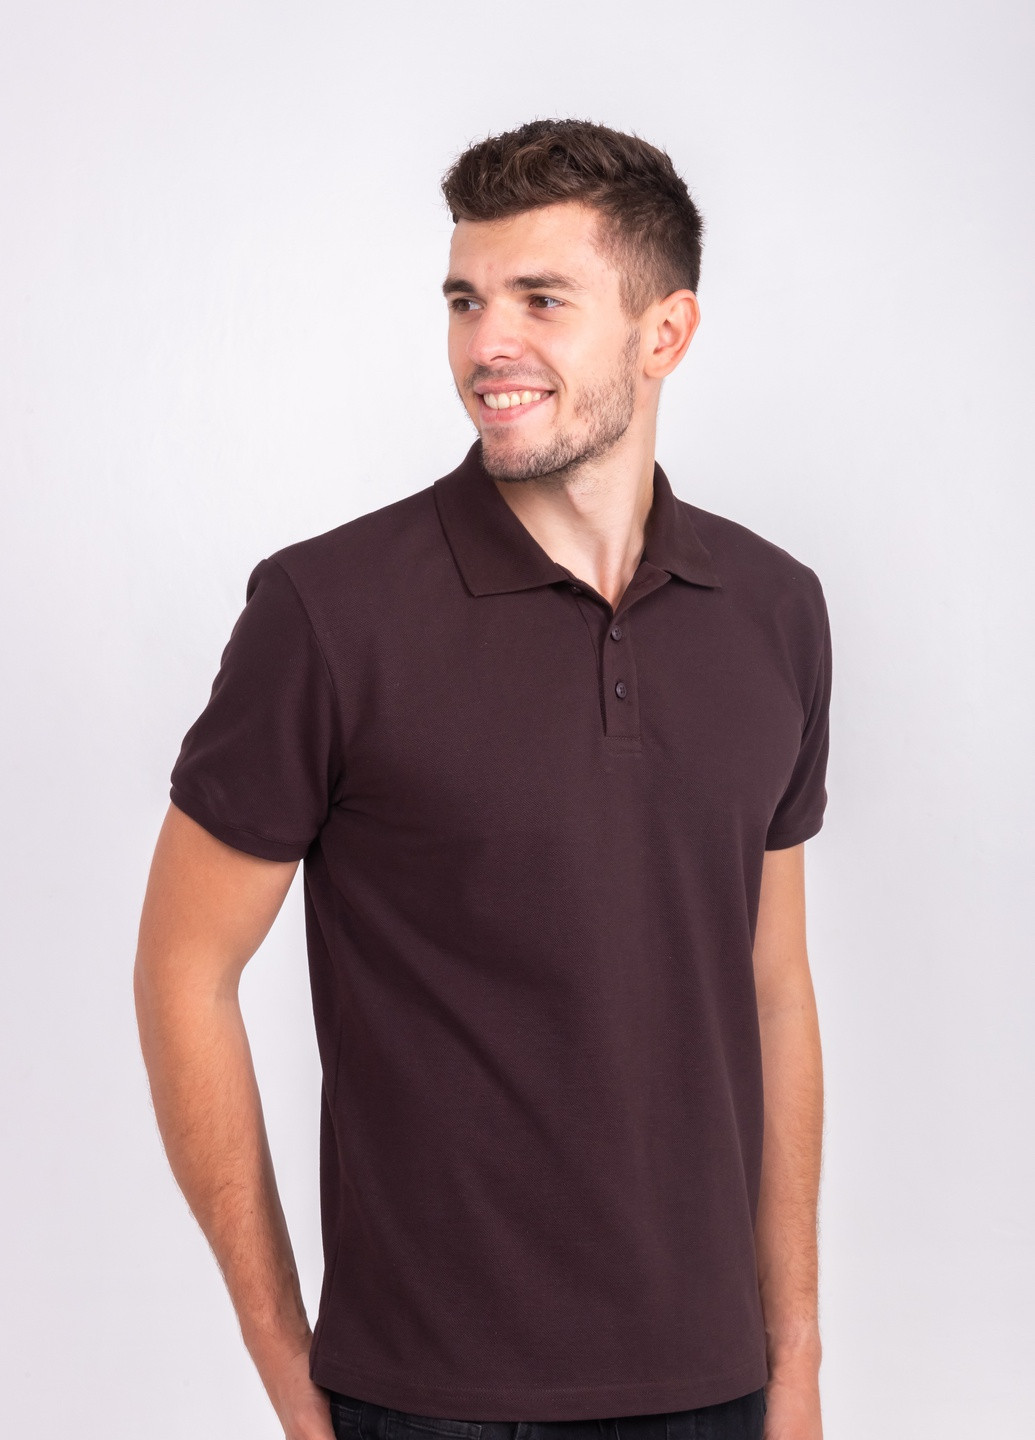 Коричневая футболка-футболка поло мужская для мужчин TvoePolo однотонная